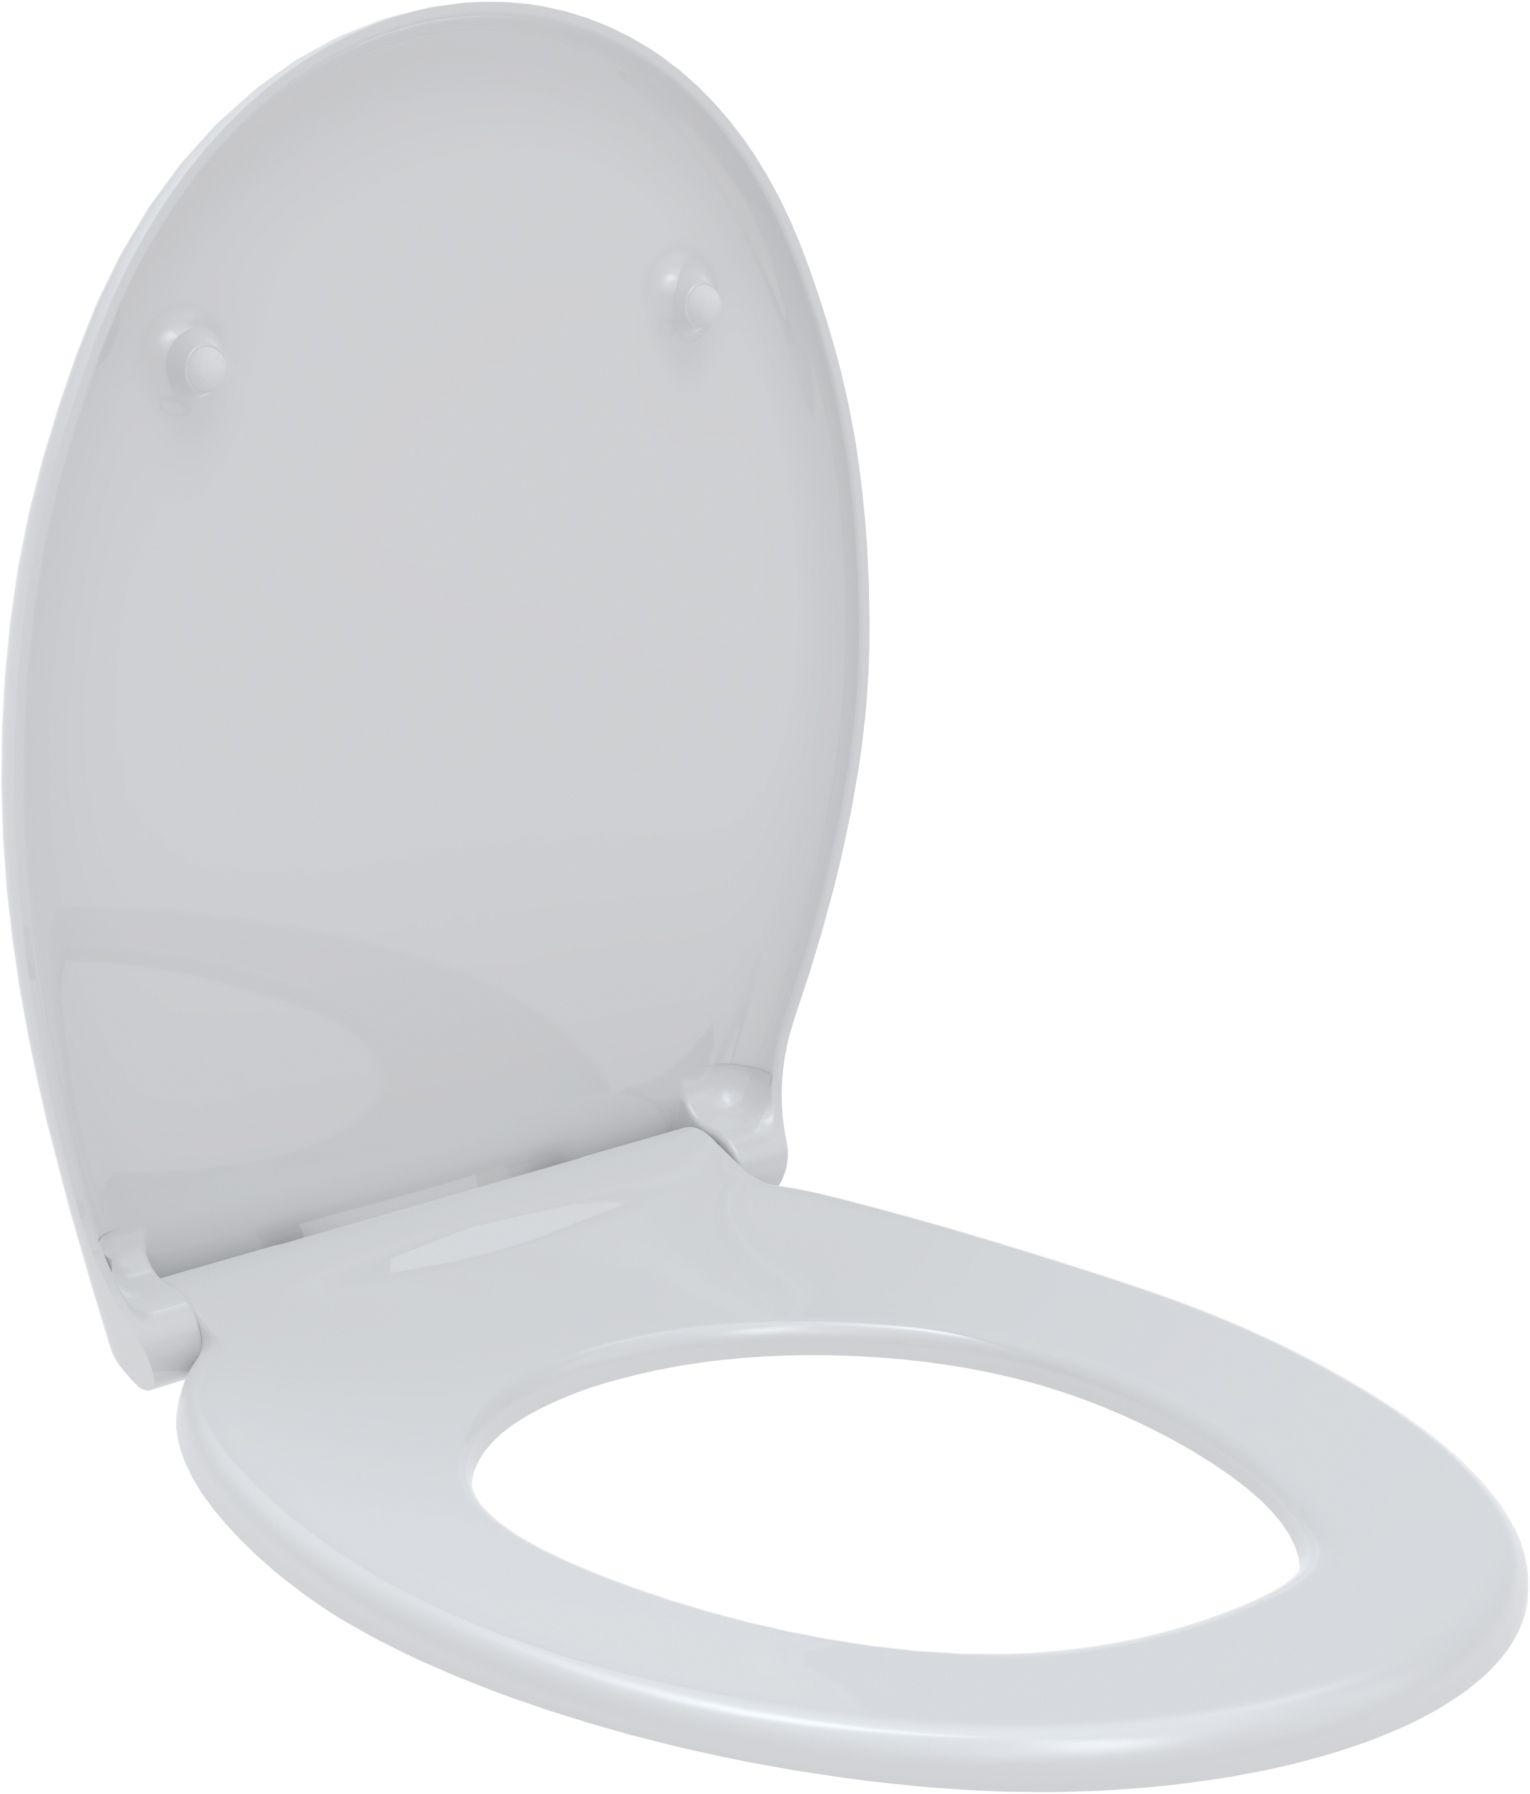 Toilet seat Libra, white, quick release